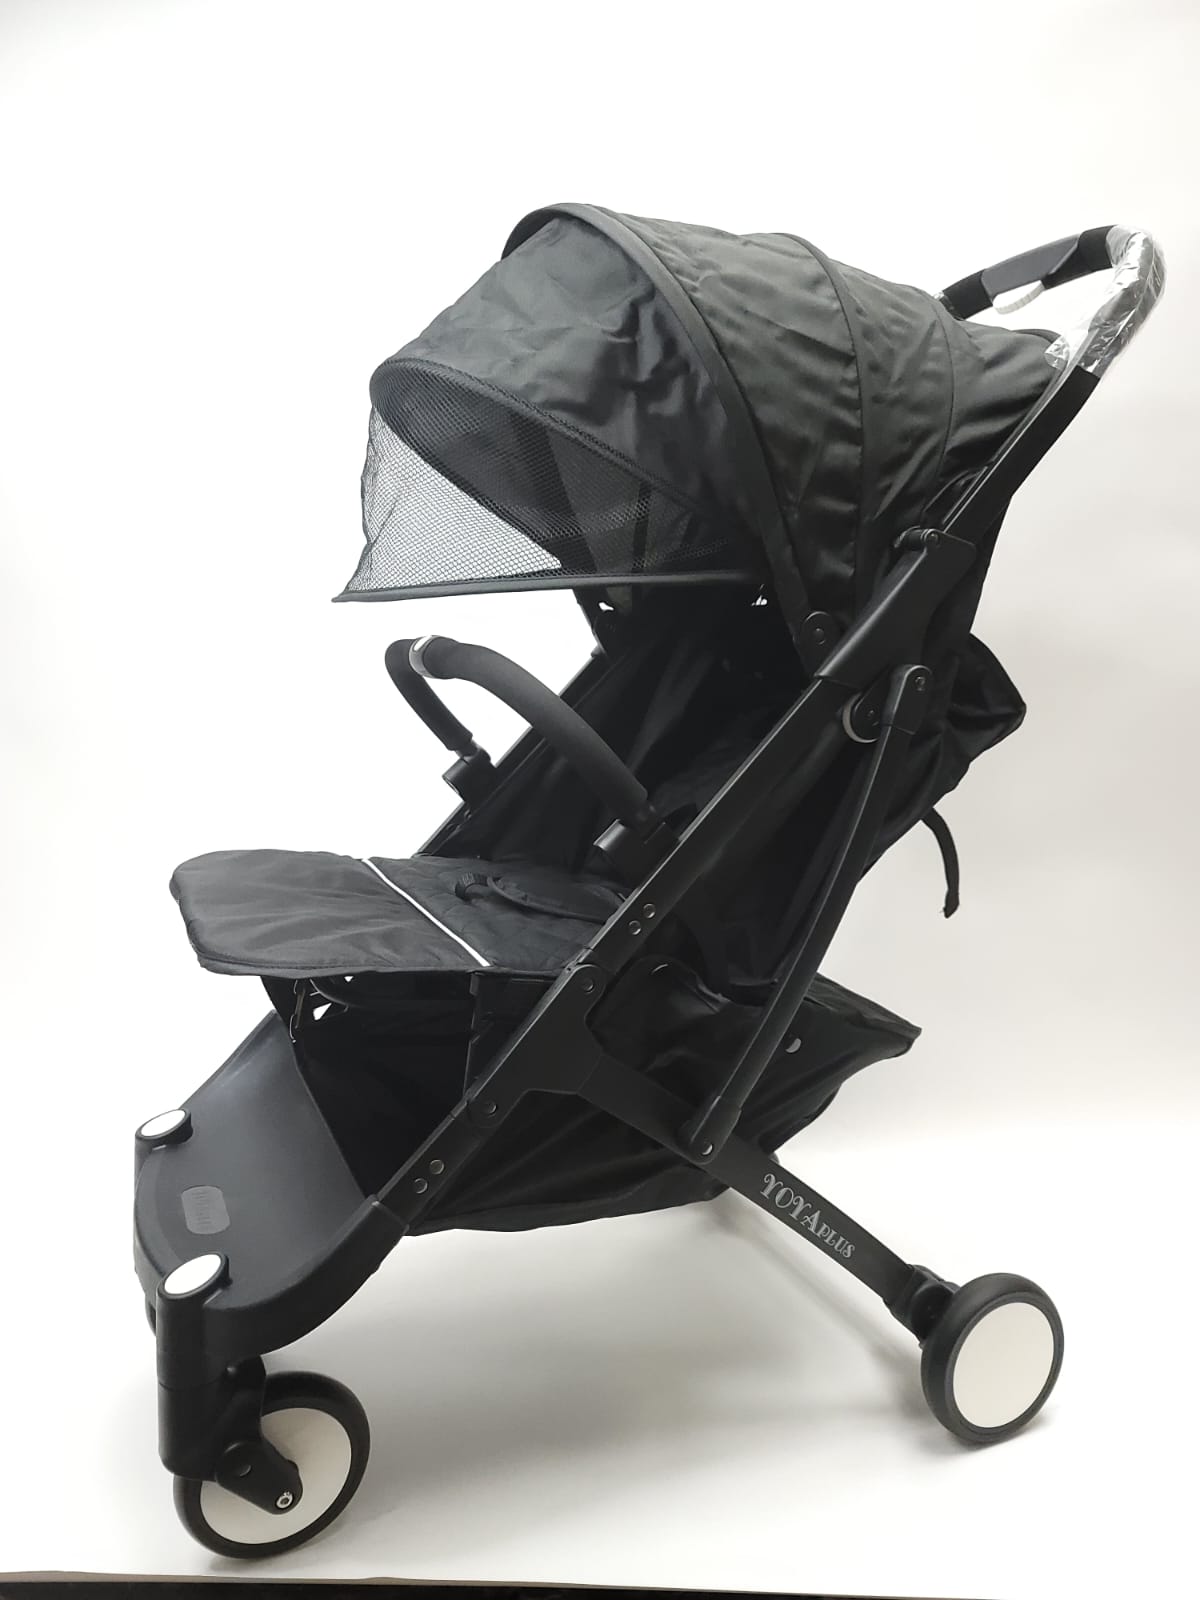 Продажа детской коляски Yoya Plus, цвет черный, состояние: новая вещь. Тест-драйв и доставка по России.